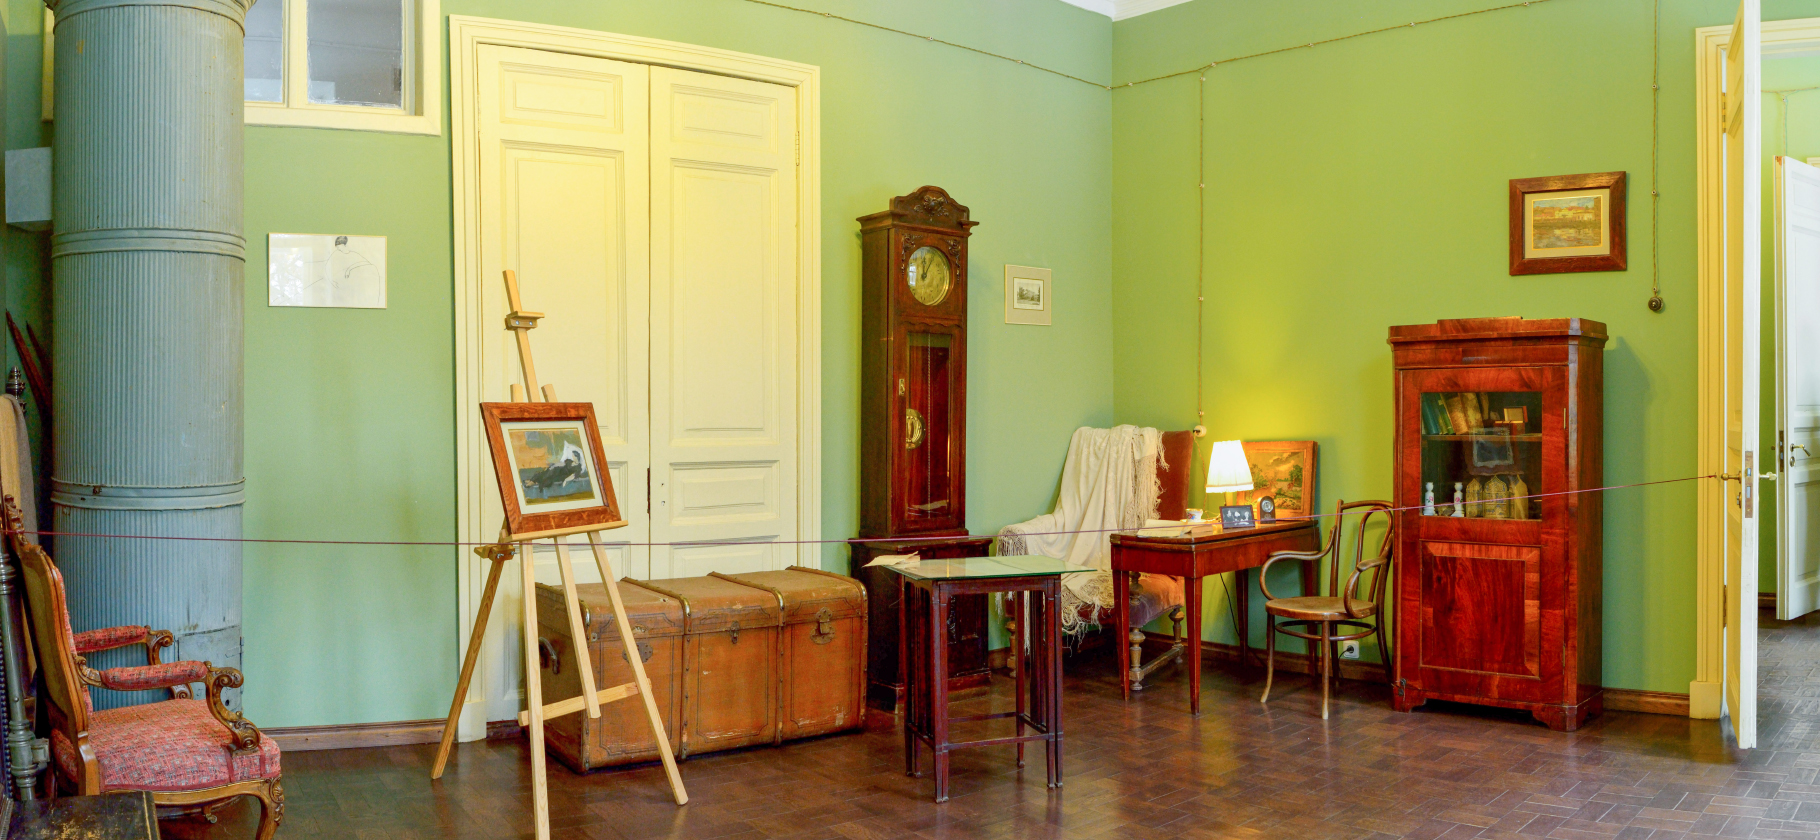 Полторы комнаты Бродского и «недоскреб» Зощенко: 10 литературных музеев Петербурга